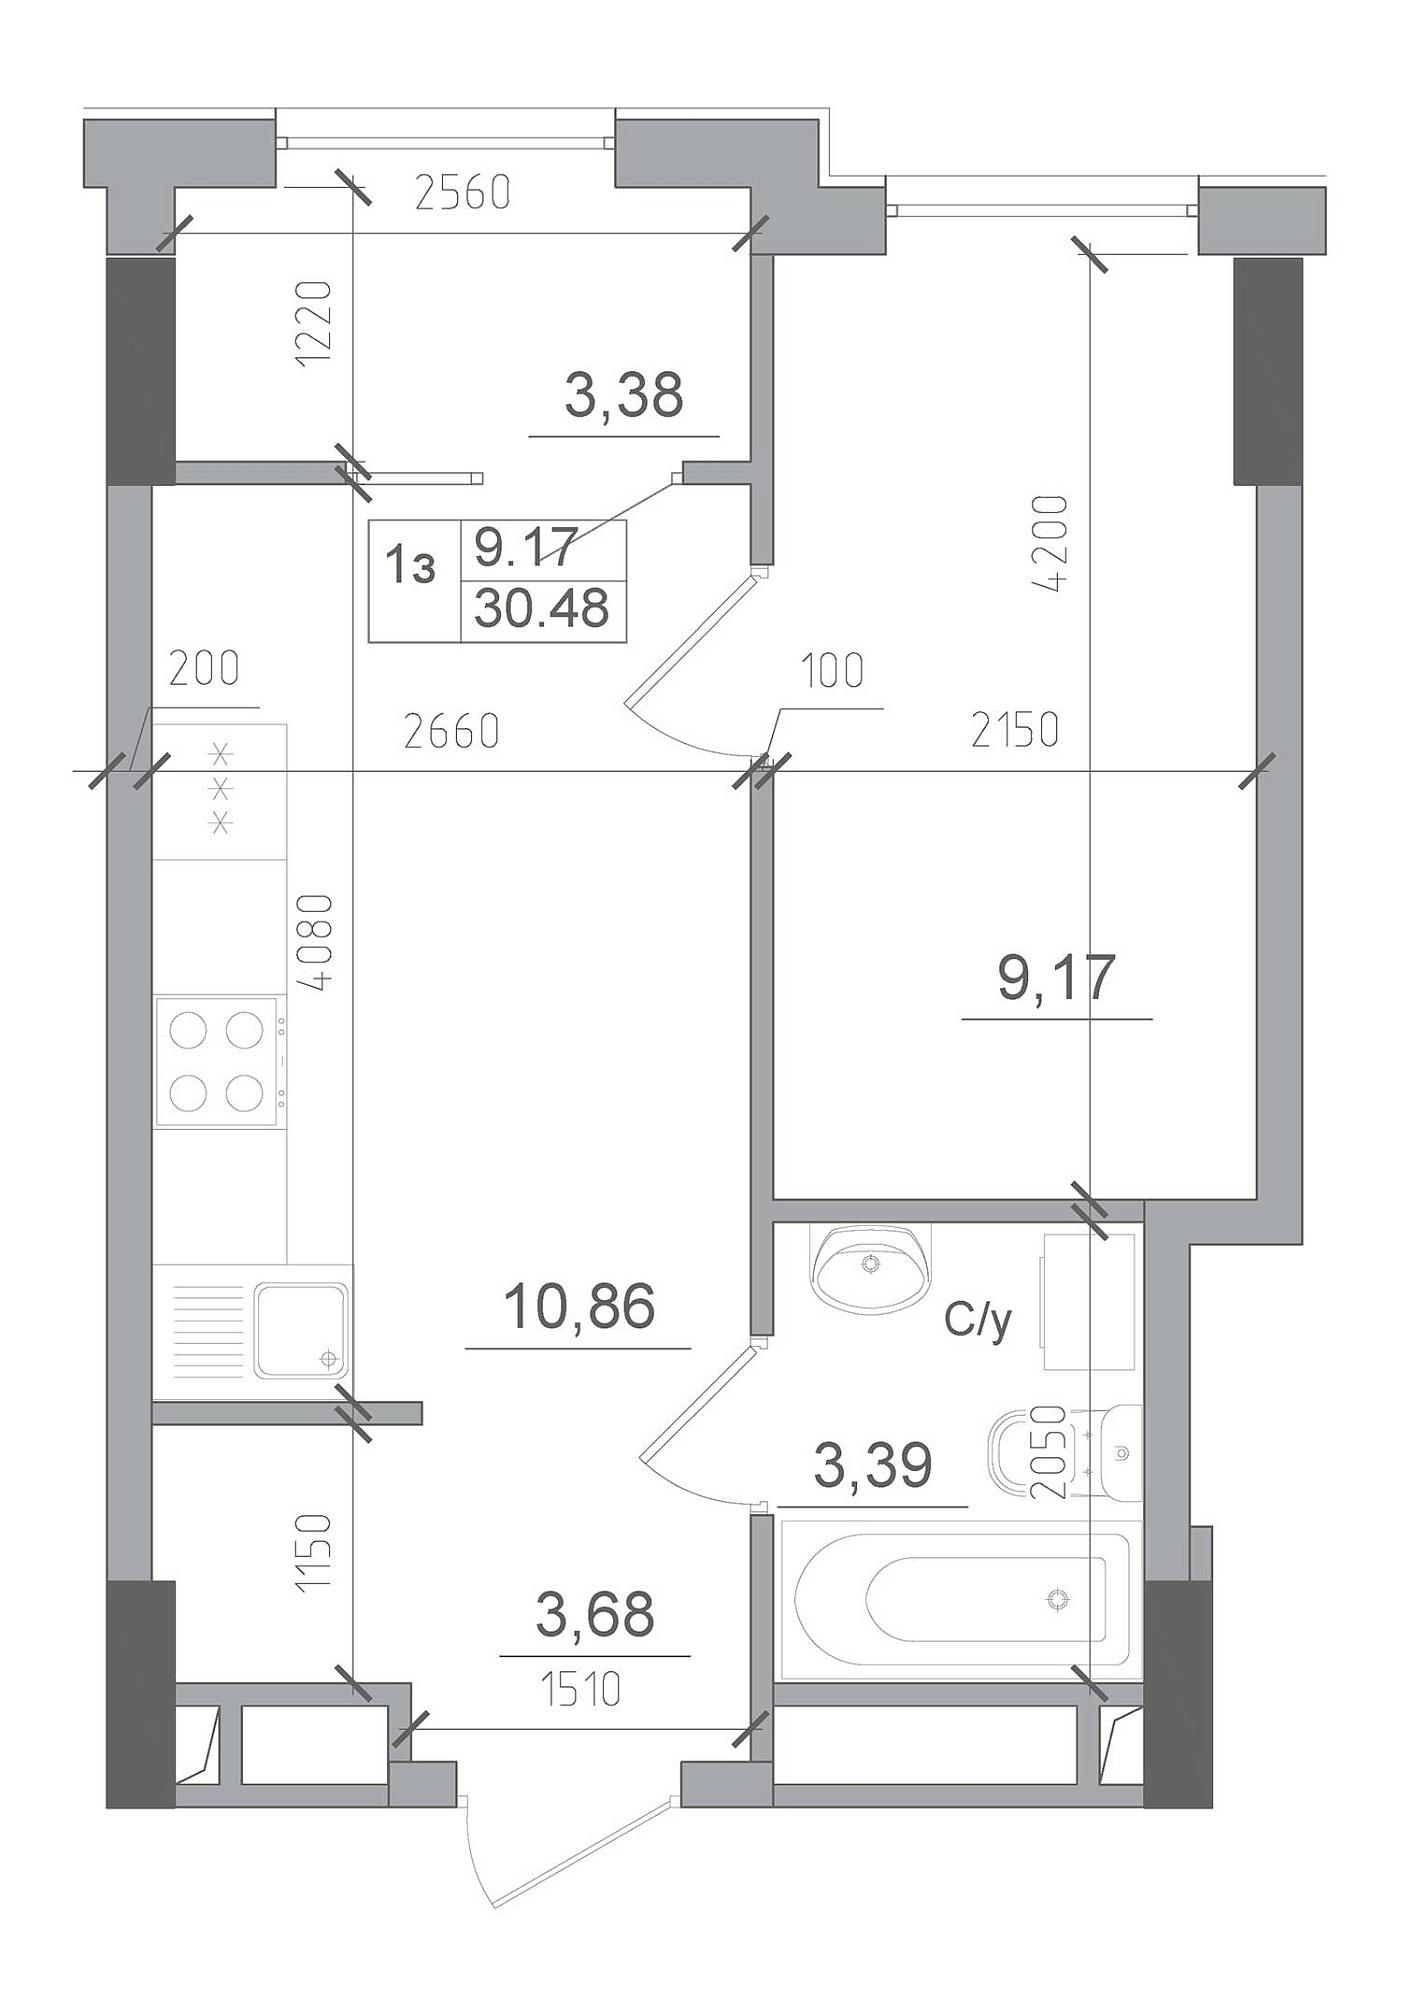 Планування 1-к квартира площею 30.48м2, AB-22-02/00013.